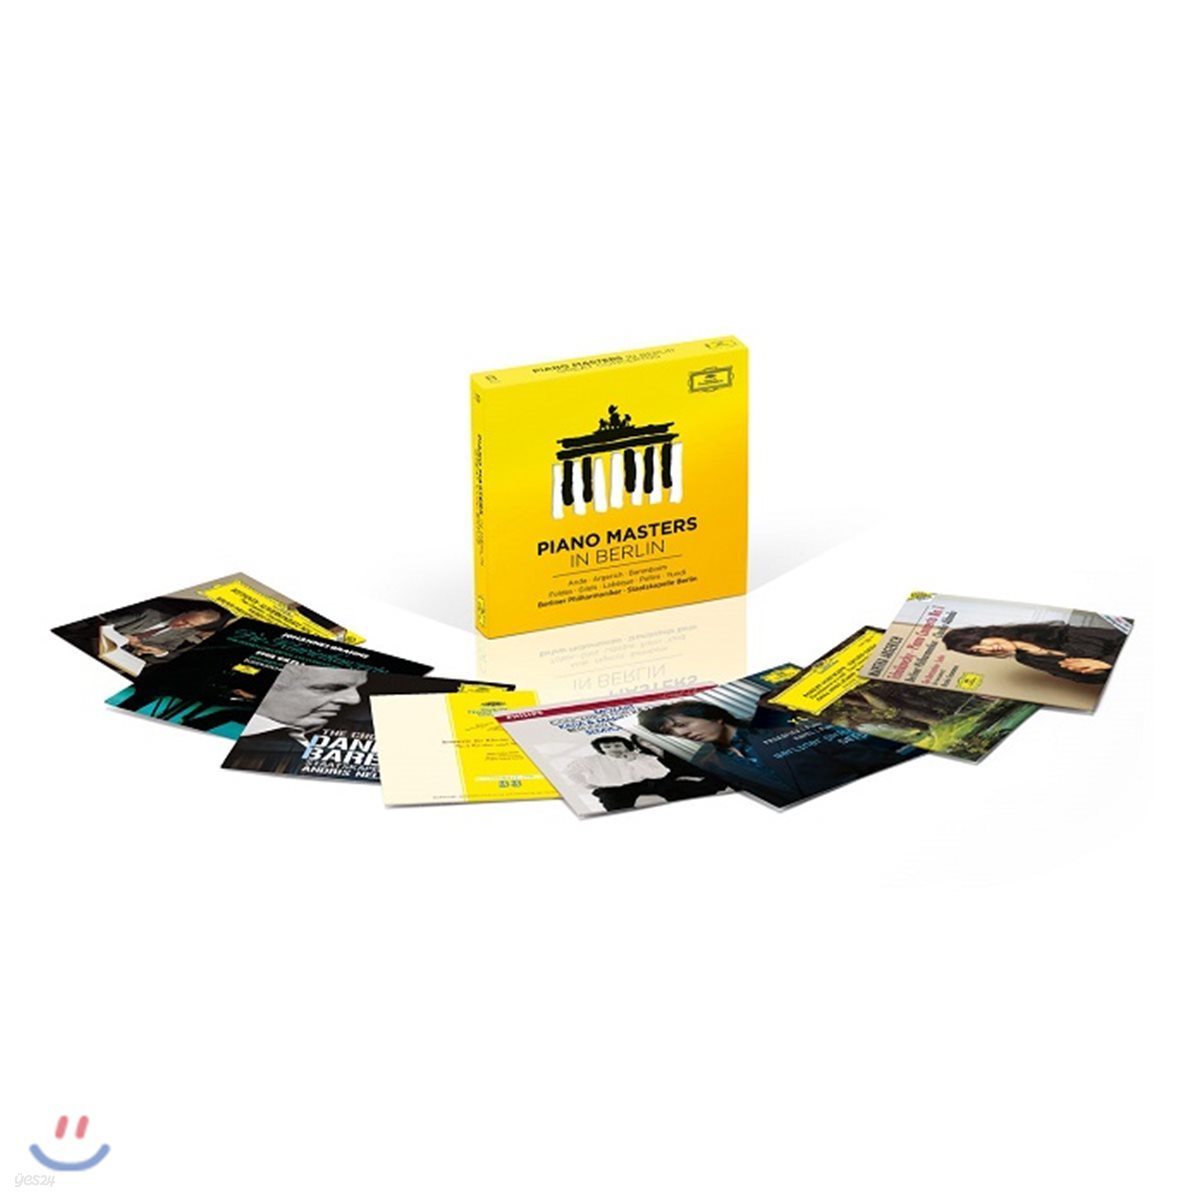 피아노 마스터스 - DG 레이블 피아노 협주곡 명반 모음집 (Piano Masters in Berlin)